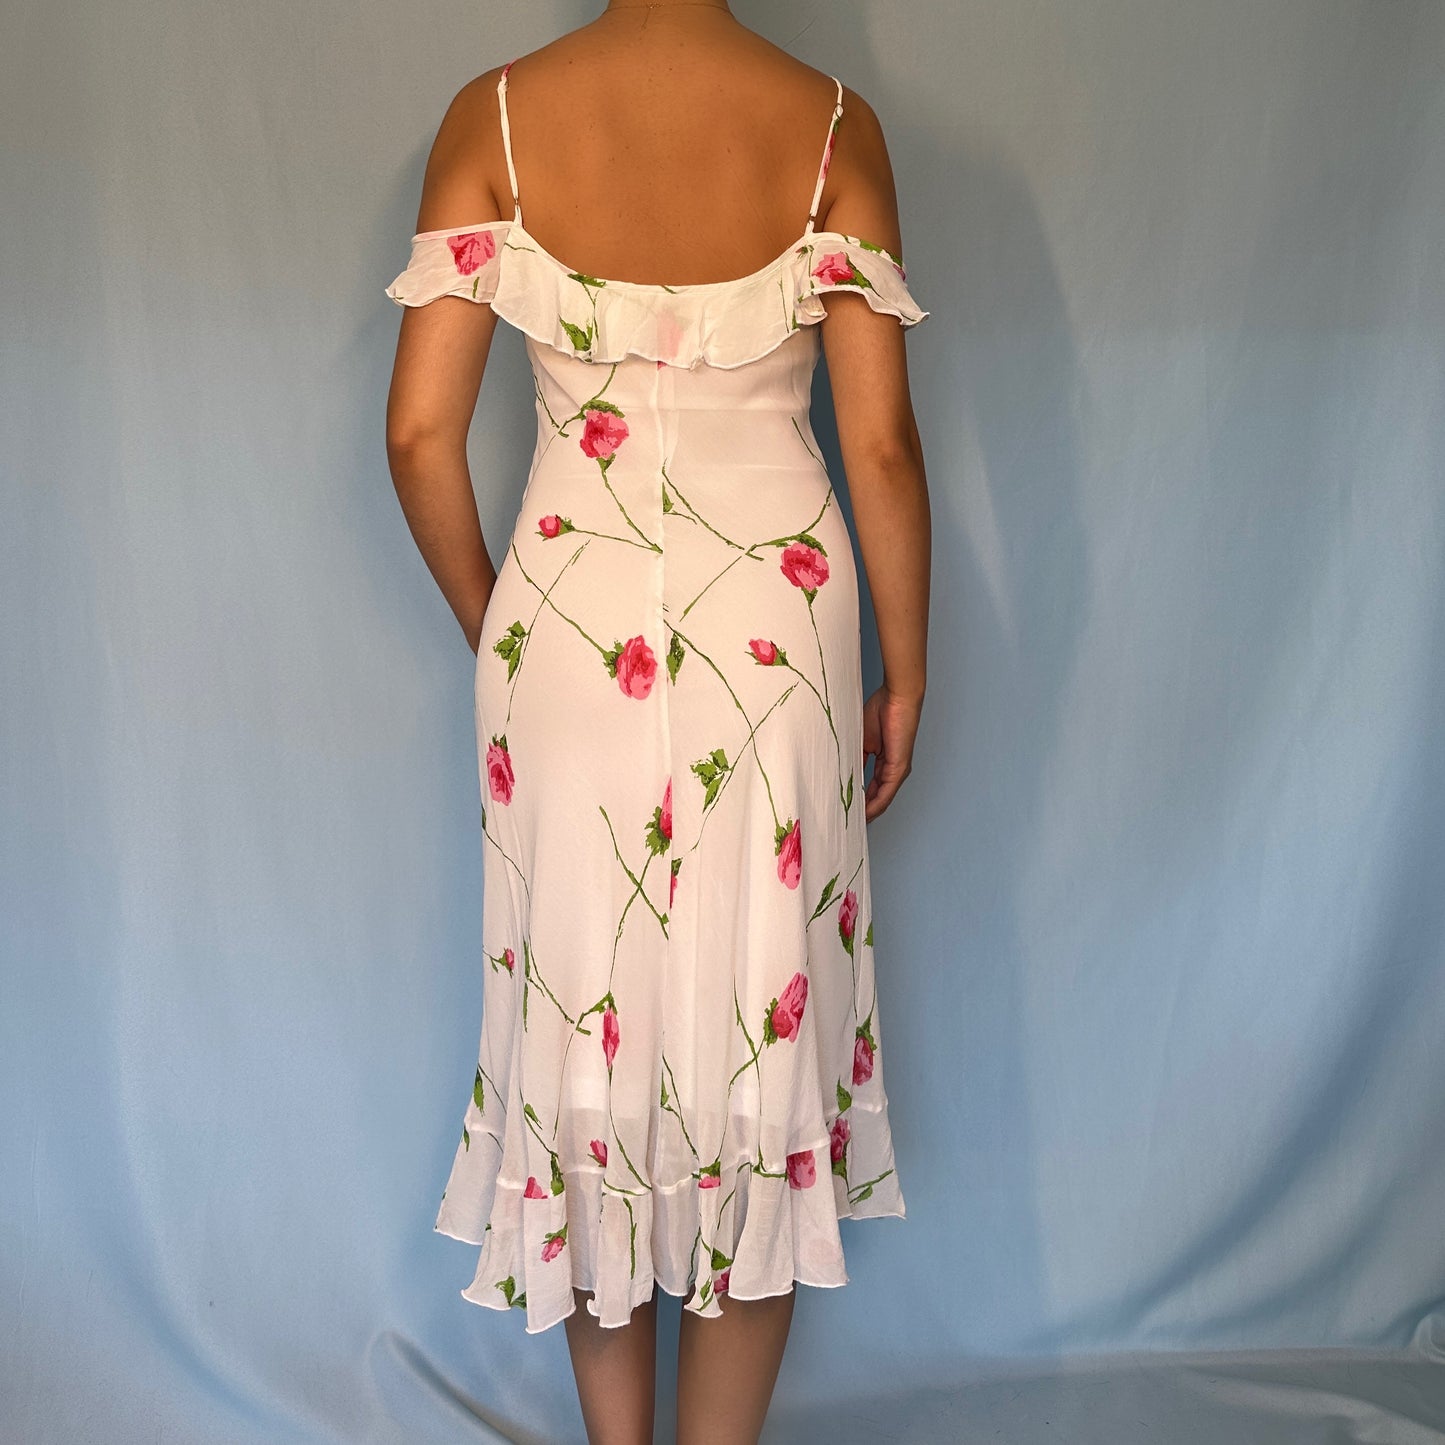 Betsey Johnson White Floral Chiffon Dress